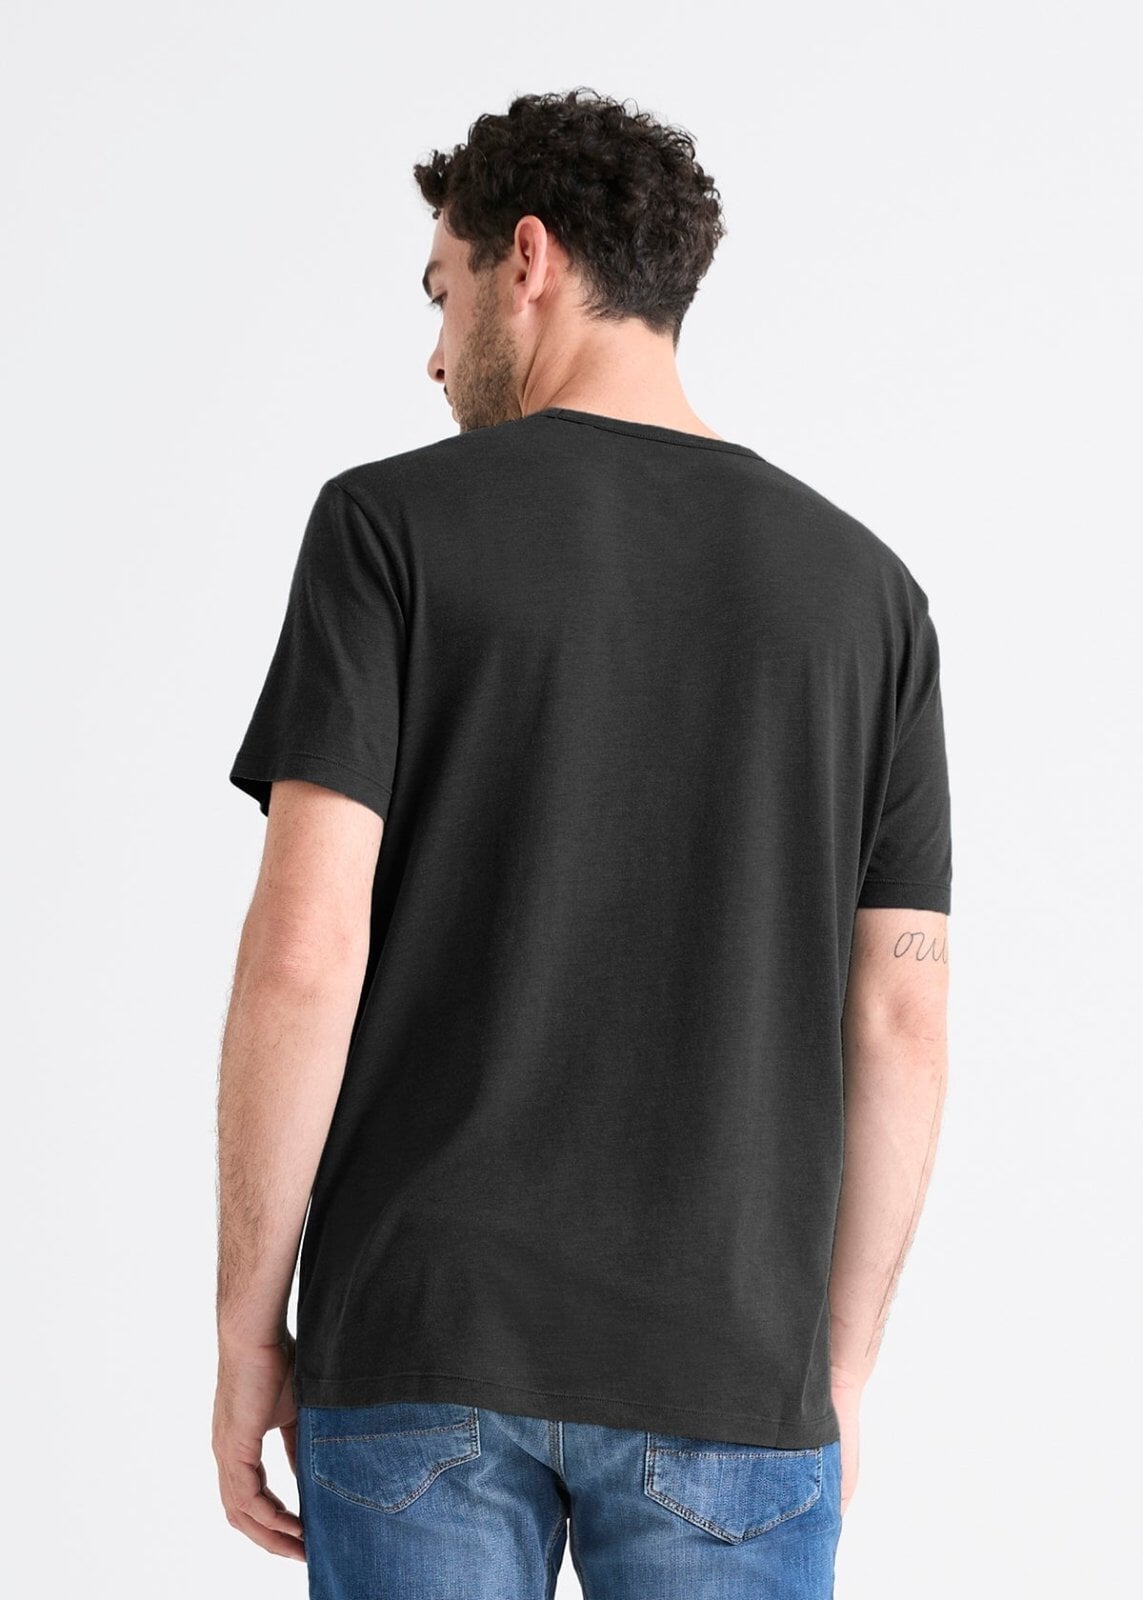 mens 100% Pima cotton black t-shirt back